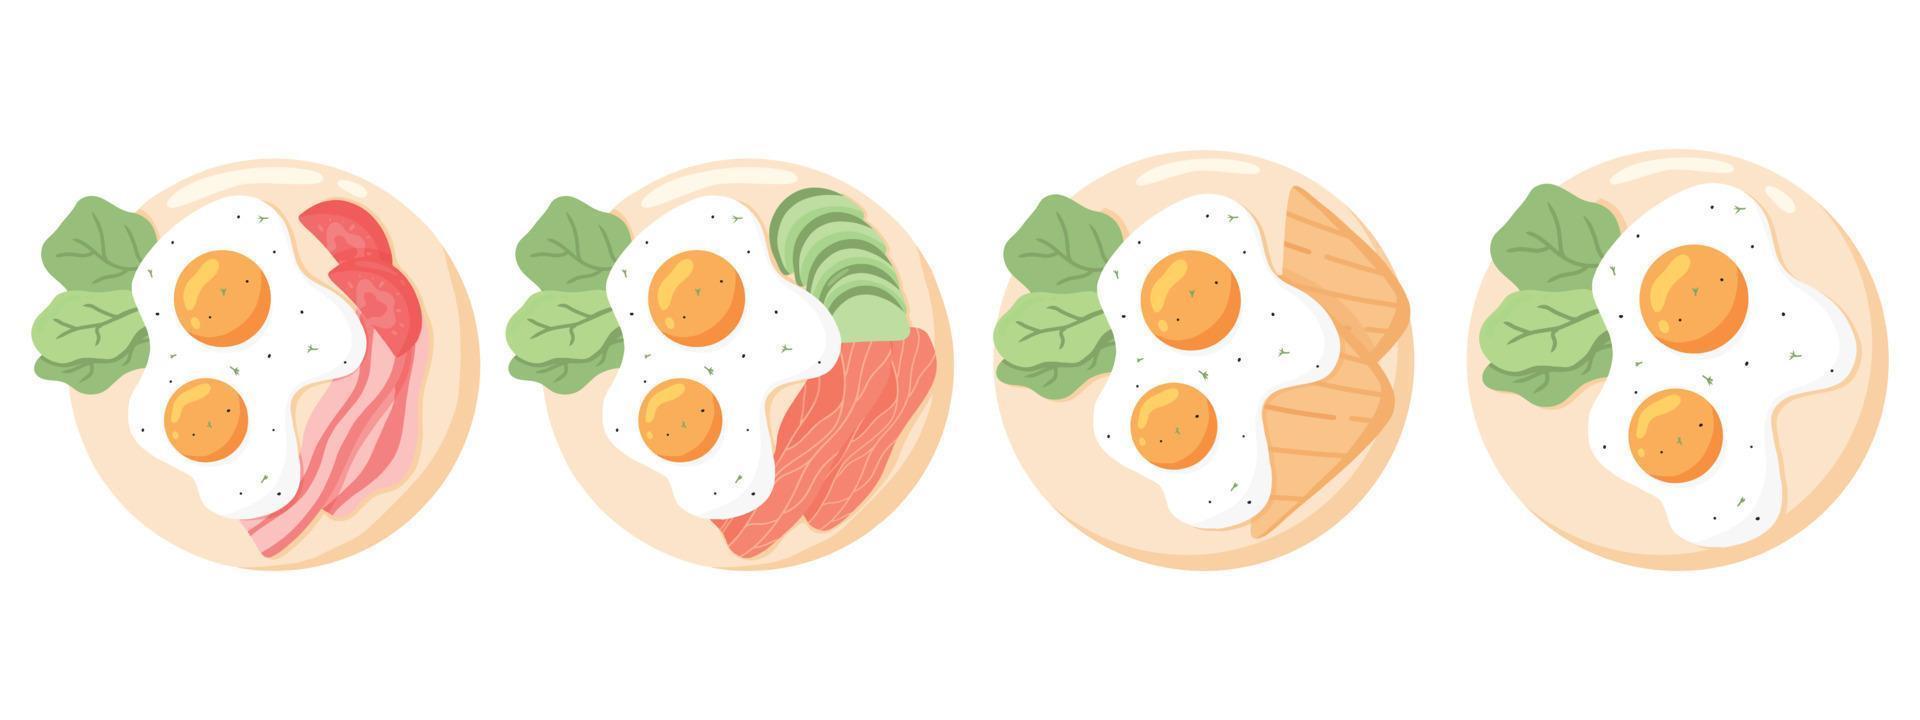 een set gebakken eieren op platen. verschillende eieren. verschillende Engelse breakfasts.vector illustratie in cartoon-stijl. gebakken eieren met spek, vis, groenten, toast. vector